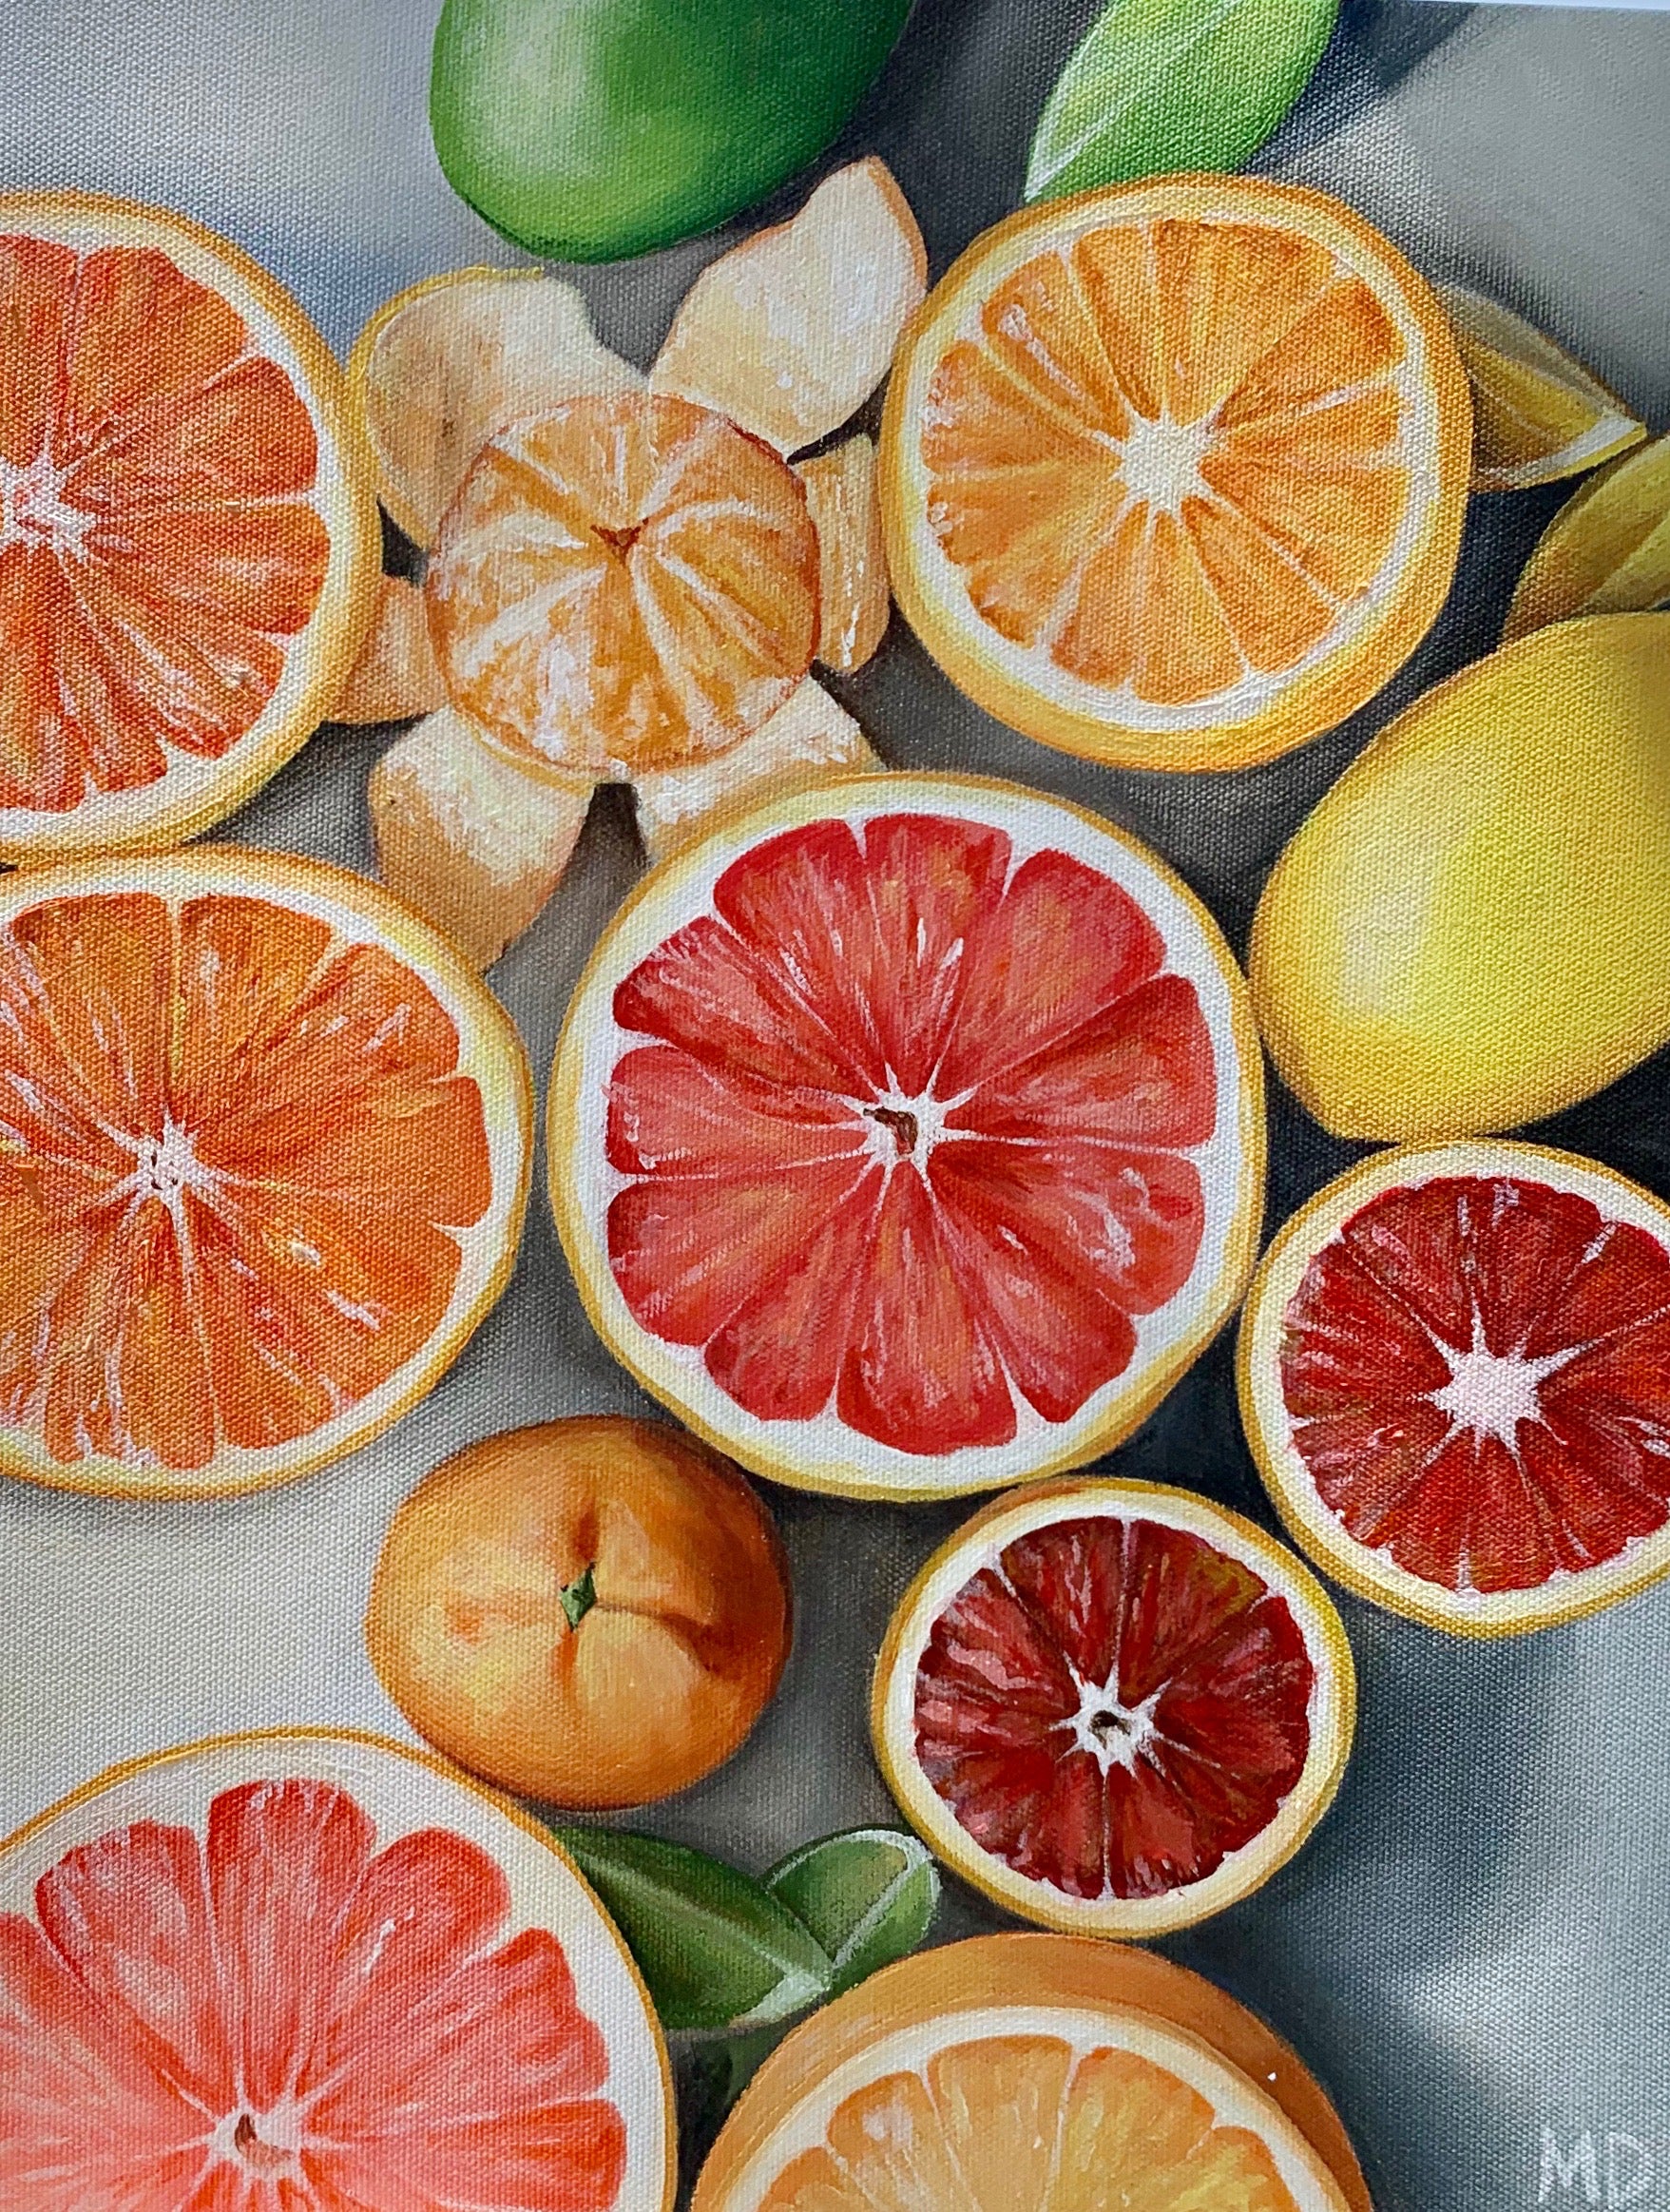 11"x14" Giclee Print - Fruta